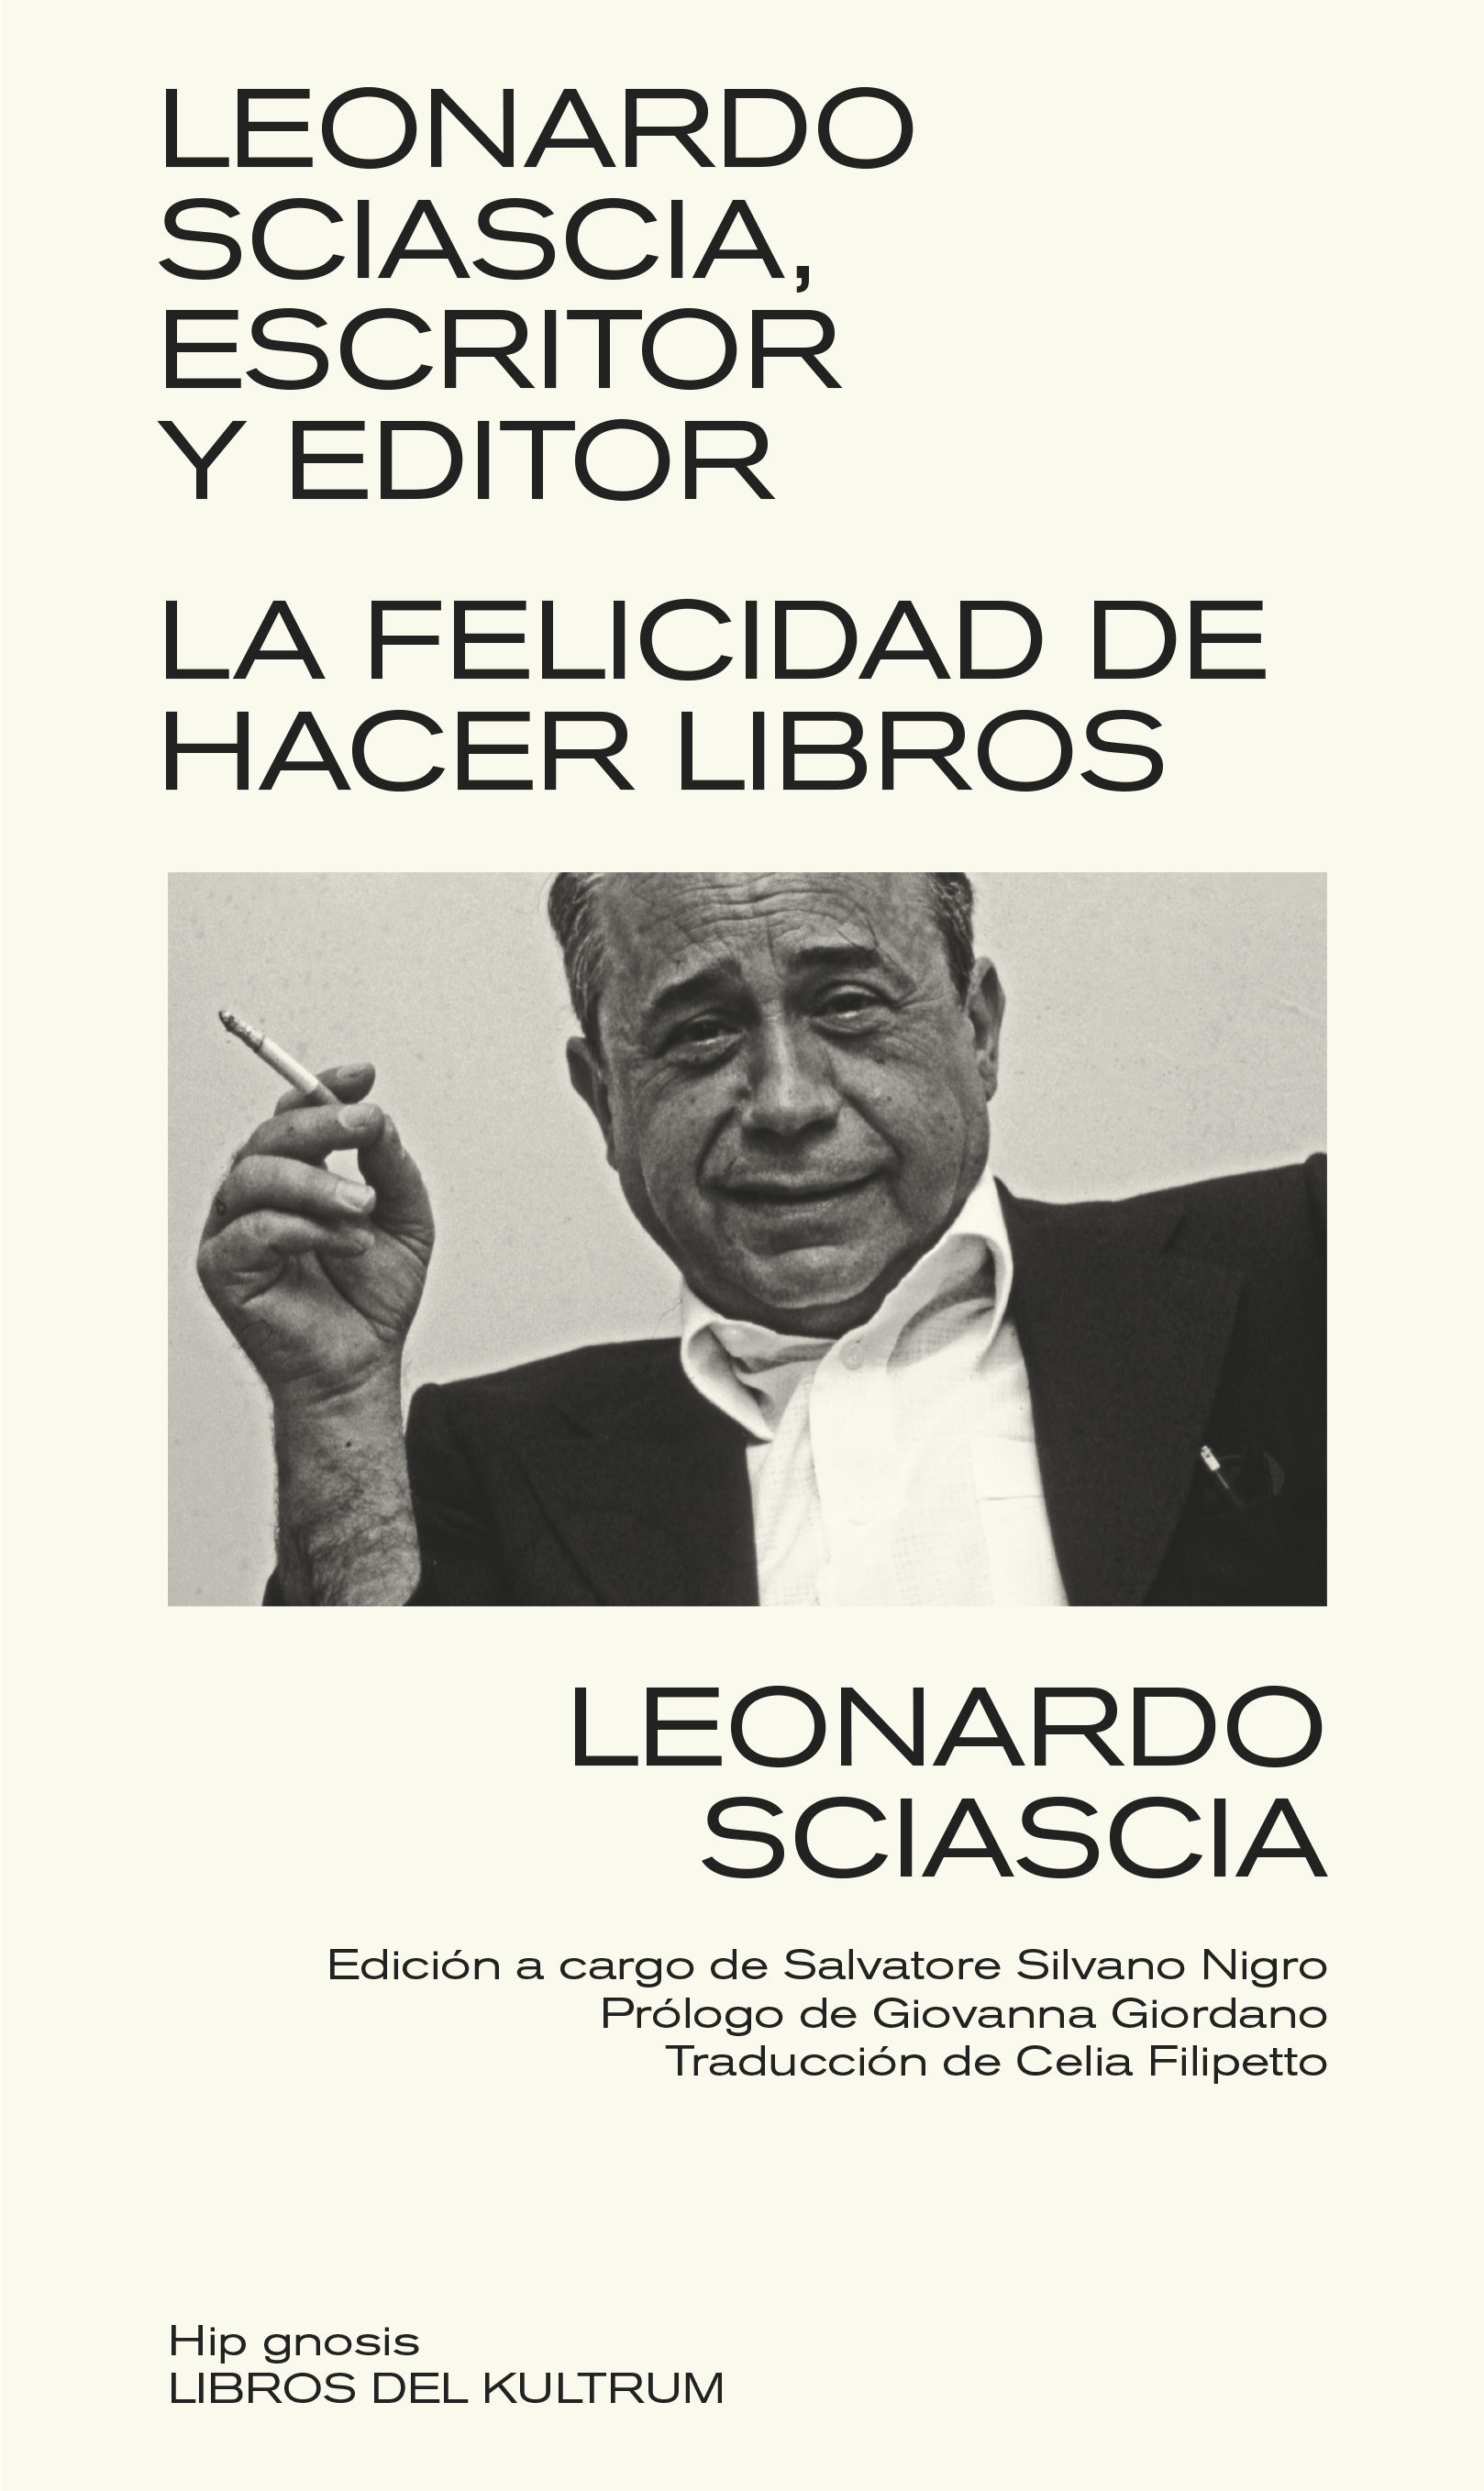 LEONARDO SCIASCIA, ESCRITOR Y EDITOR